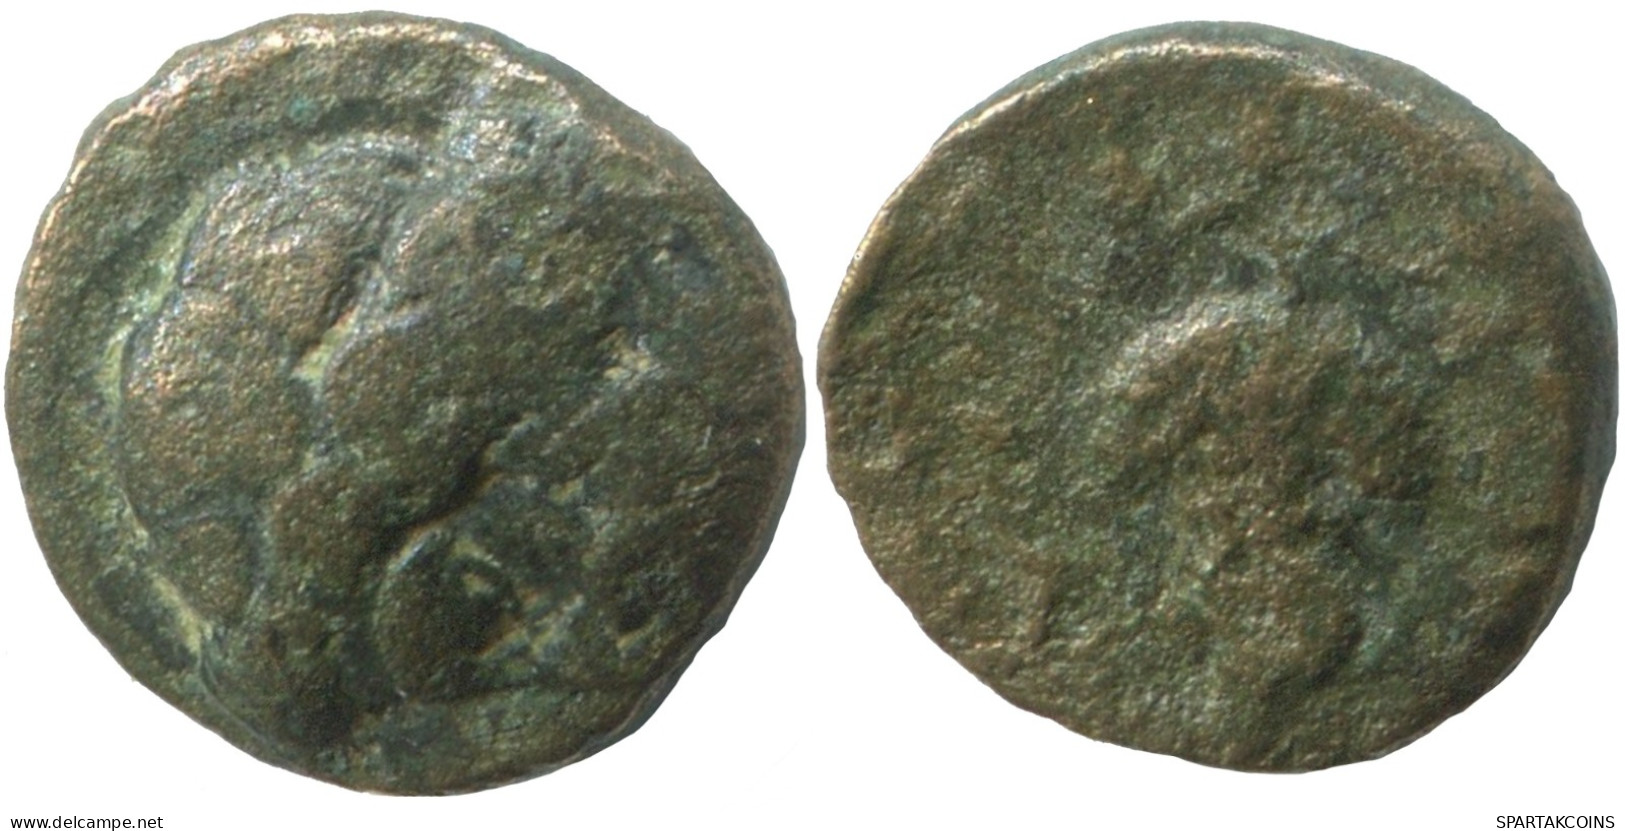 APOLLO GRAPE Authentic GREEK Coin 1.1g/10mm #SAV1393.11.U.A - Greek